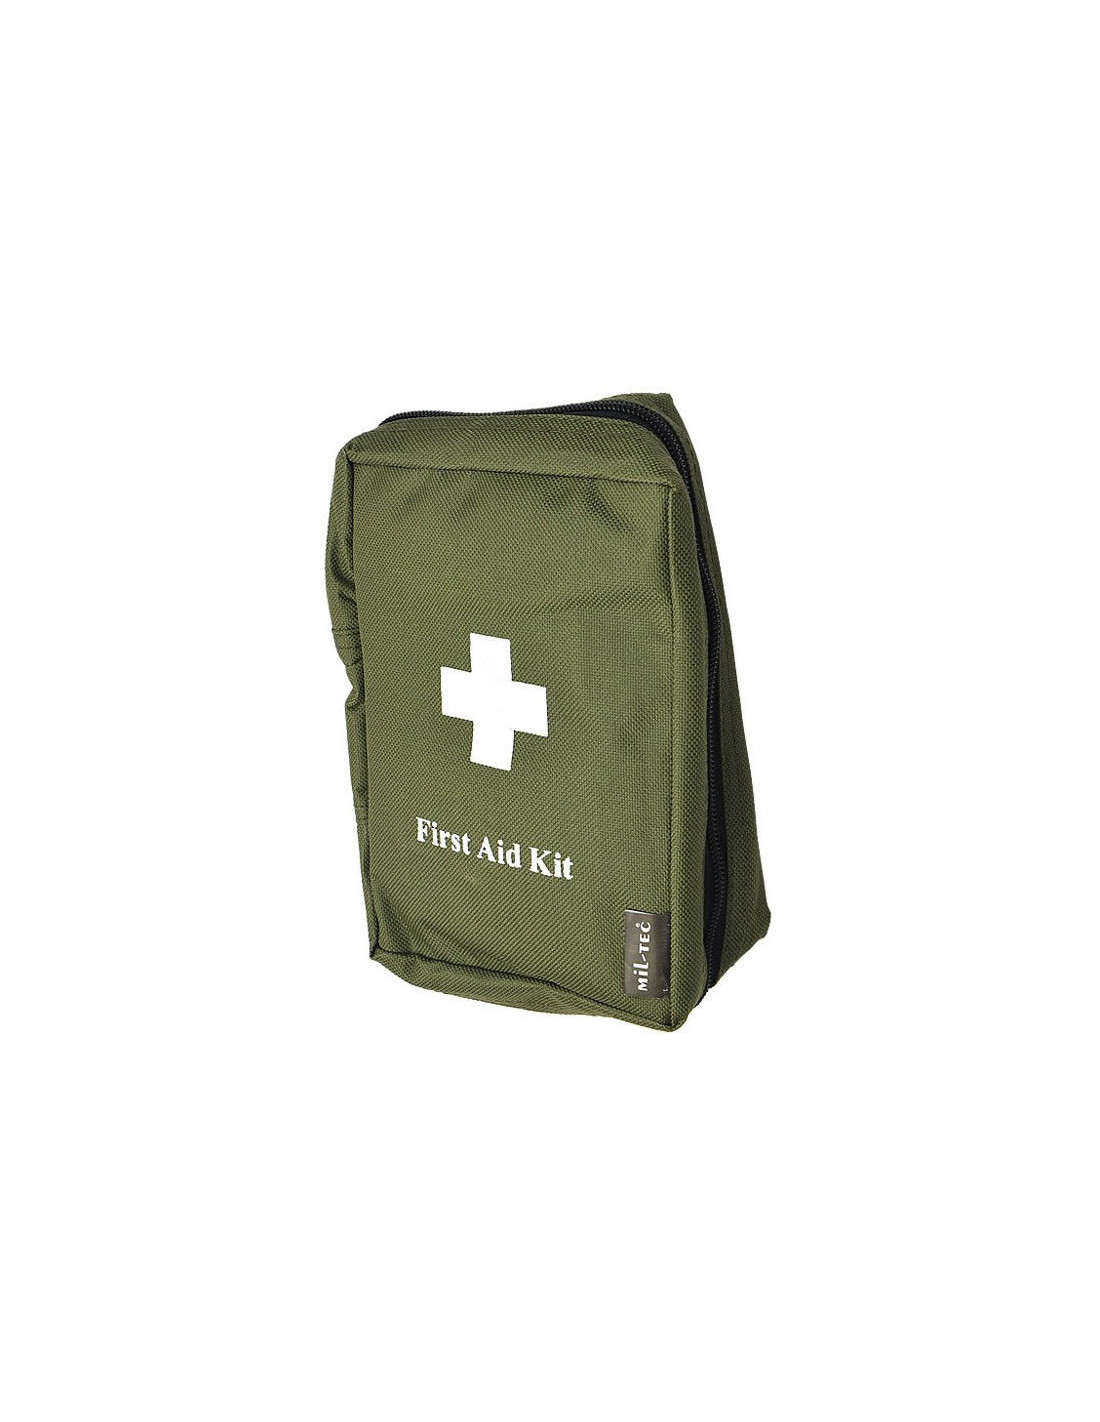 Kit de premier secours militaire petit format vert OD - MIL-TEC